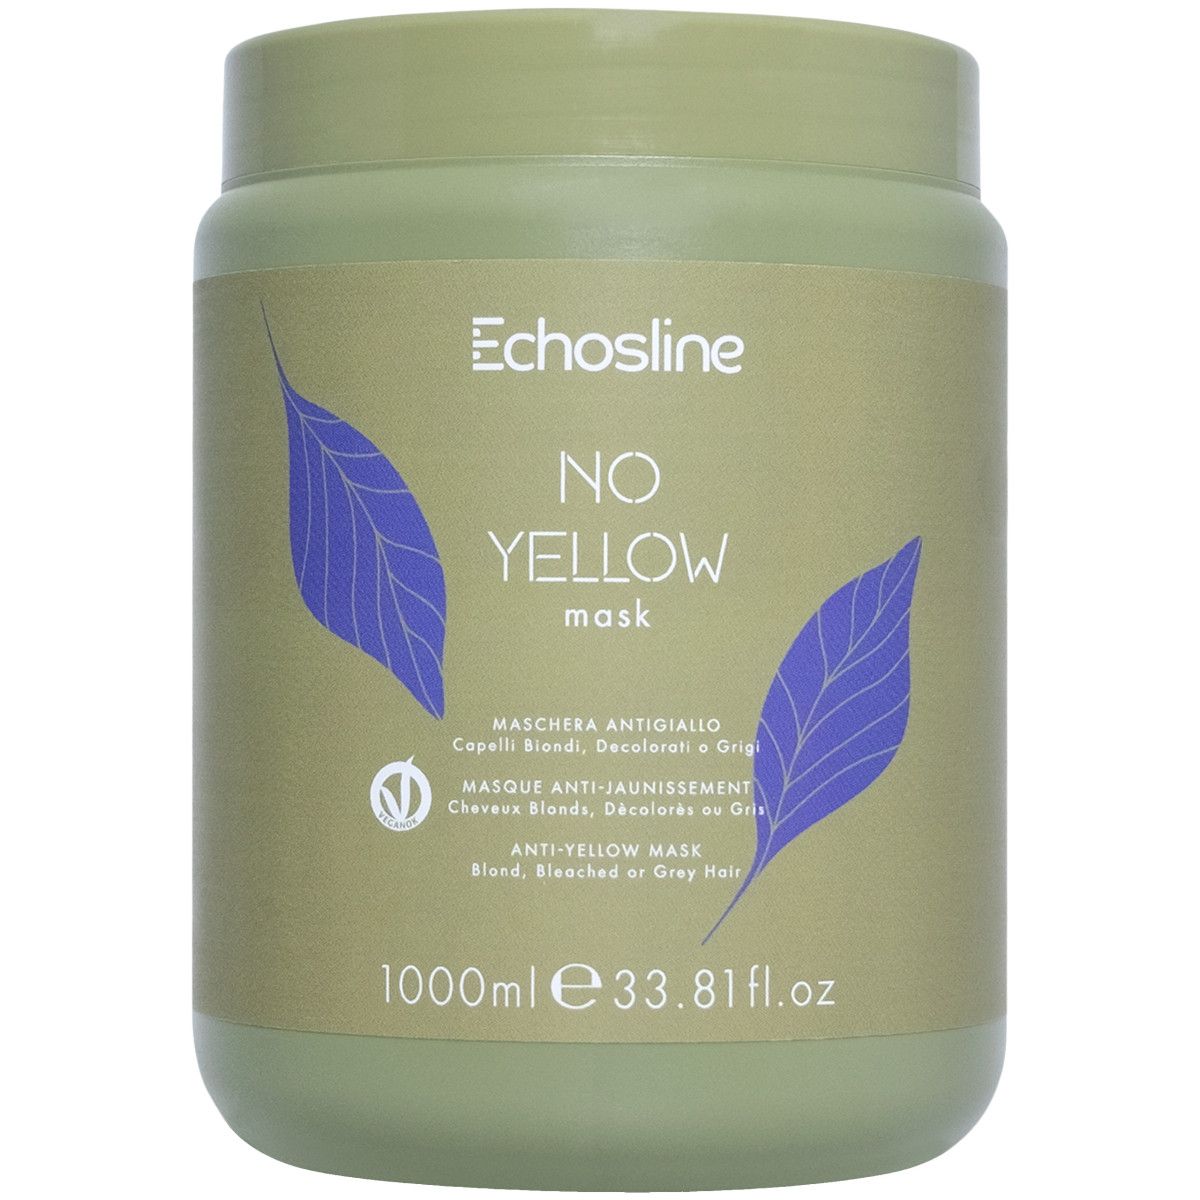 Echosline No Yellow - maska neutralizująca żółte tony, 1000ml